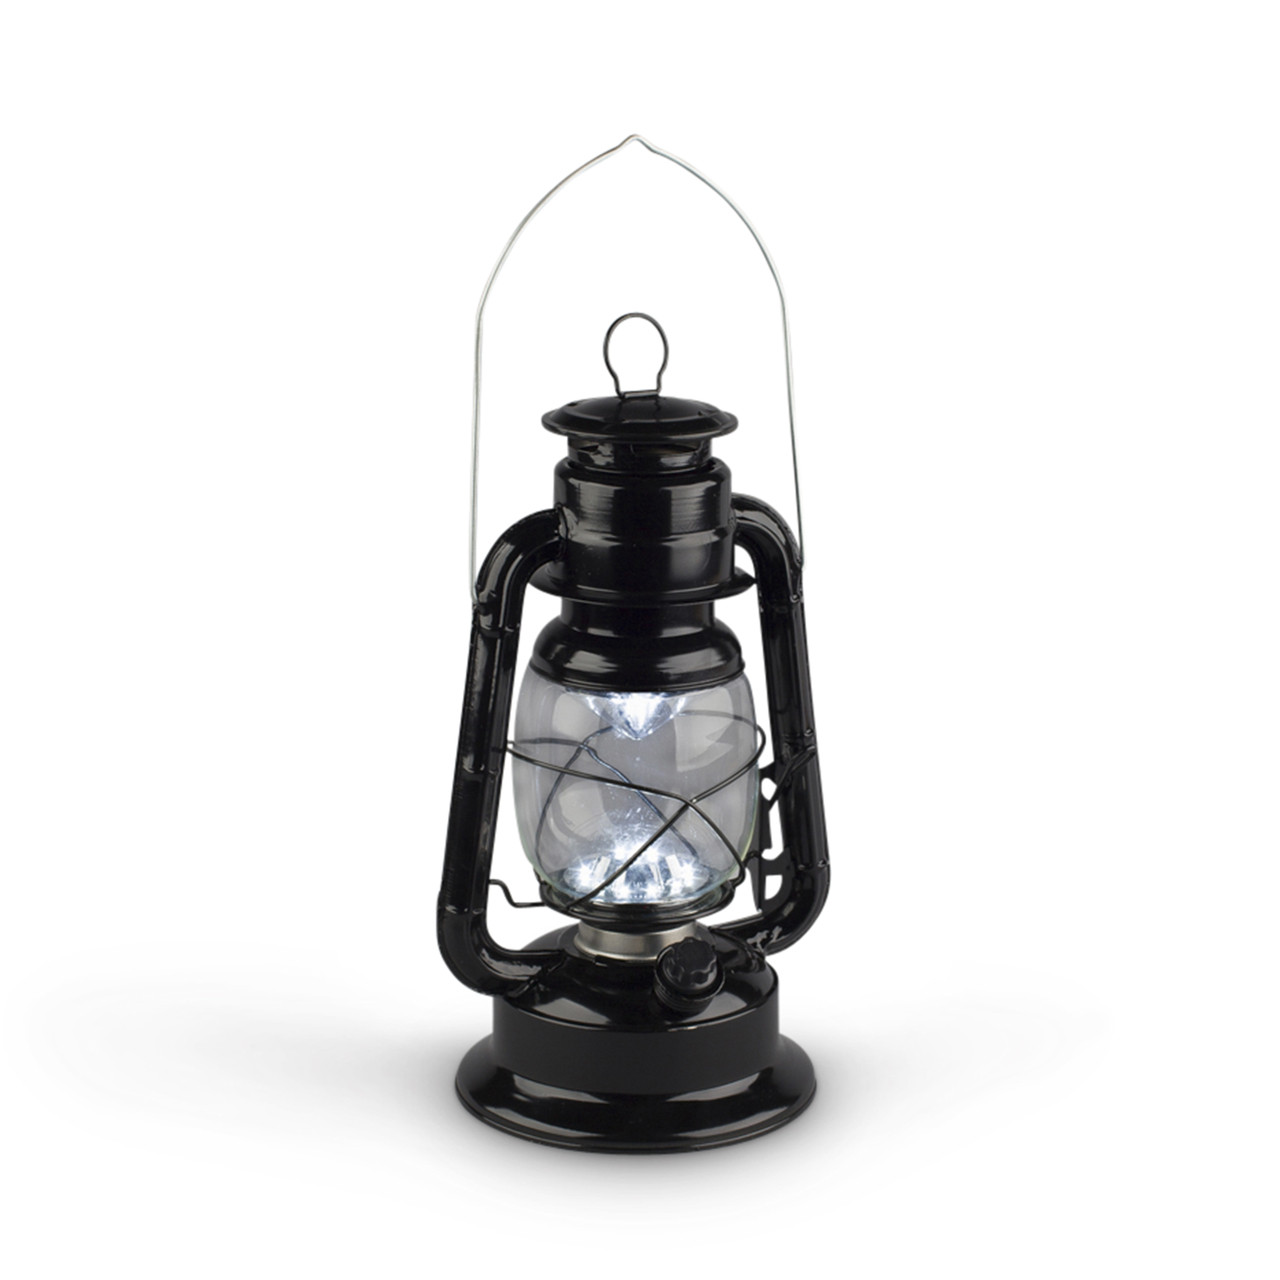 modern outdoor hurricane lantern